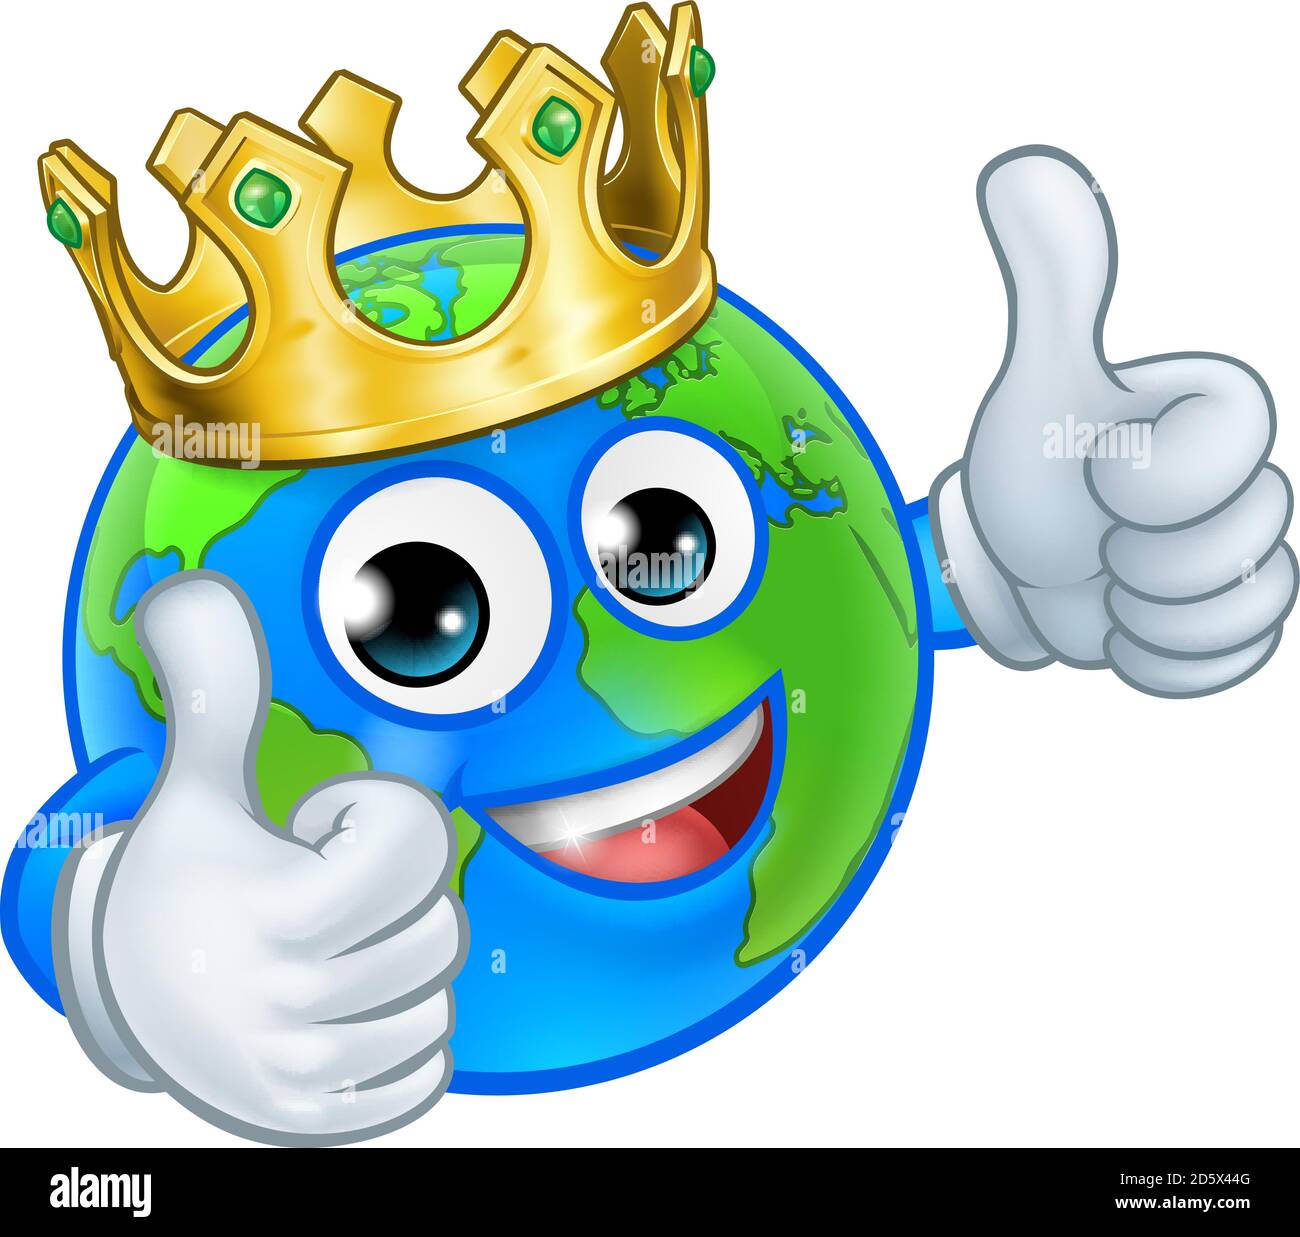 Crown Earth Globe mascota del mundo personaje Cartoon Ilustración del Vector